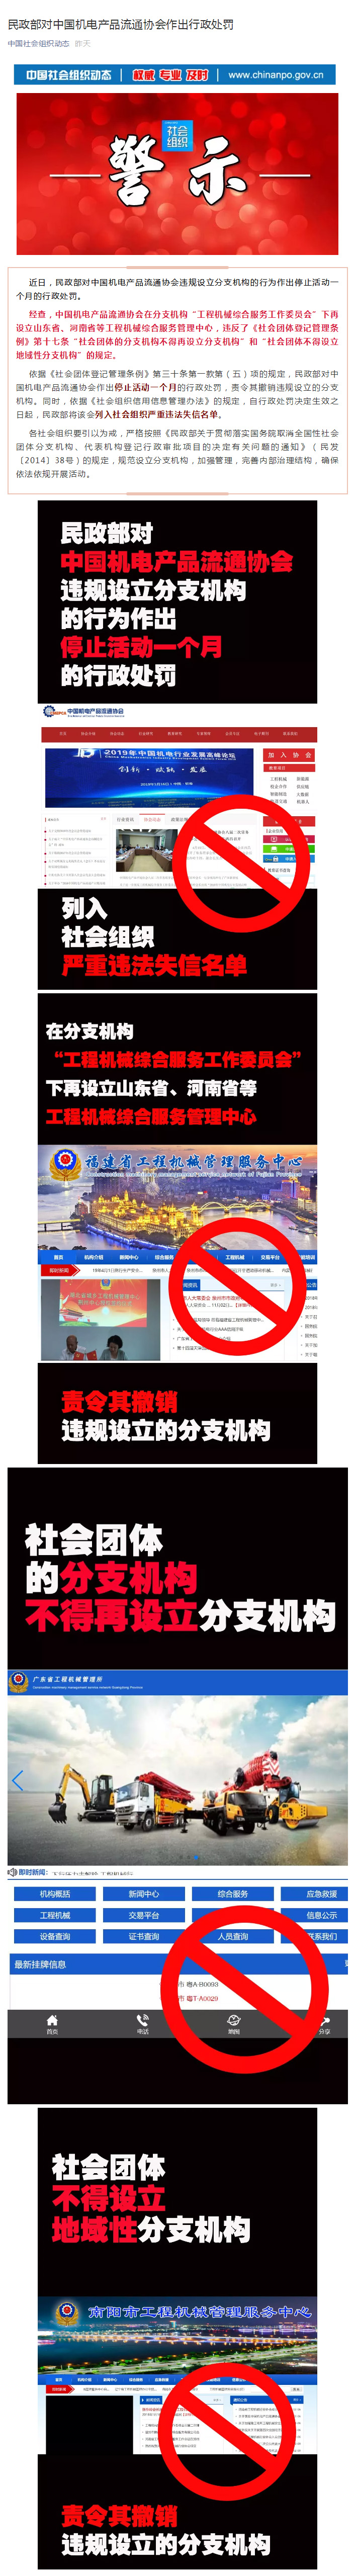 民政部对中国机电产品流通协会作出行政处罚.jpg